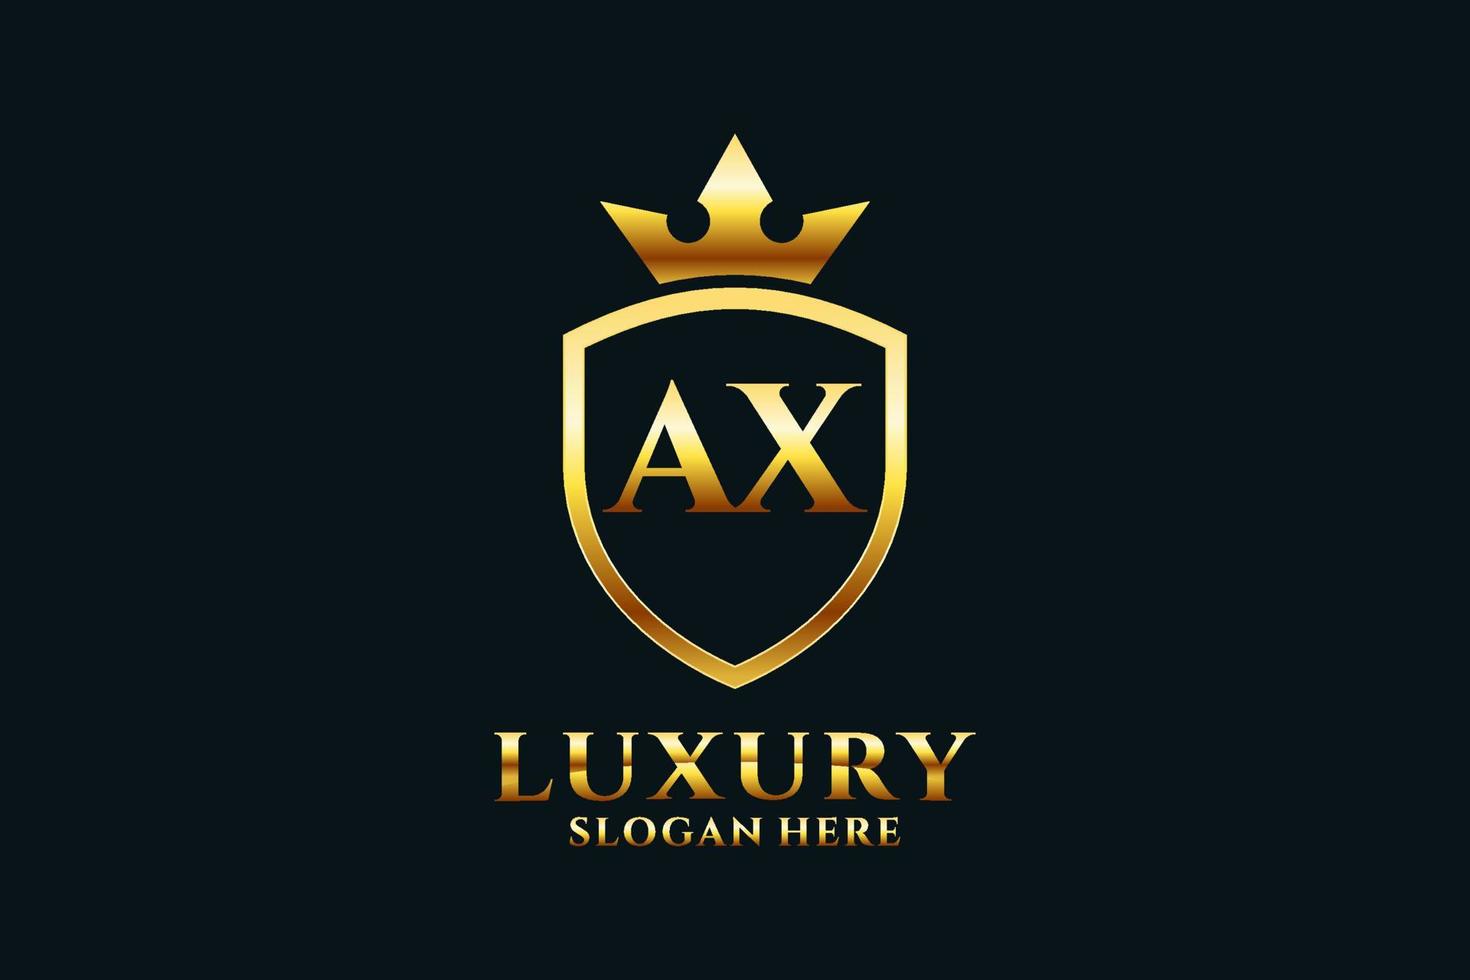 Initial Axt Elegantes Luxus-Monogramm-Logo oder Abzeichen-Vorlage mit Schriftrollen und Königskrone - perfekt für luxuriöse Branding-Projekte vektor